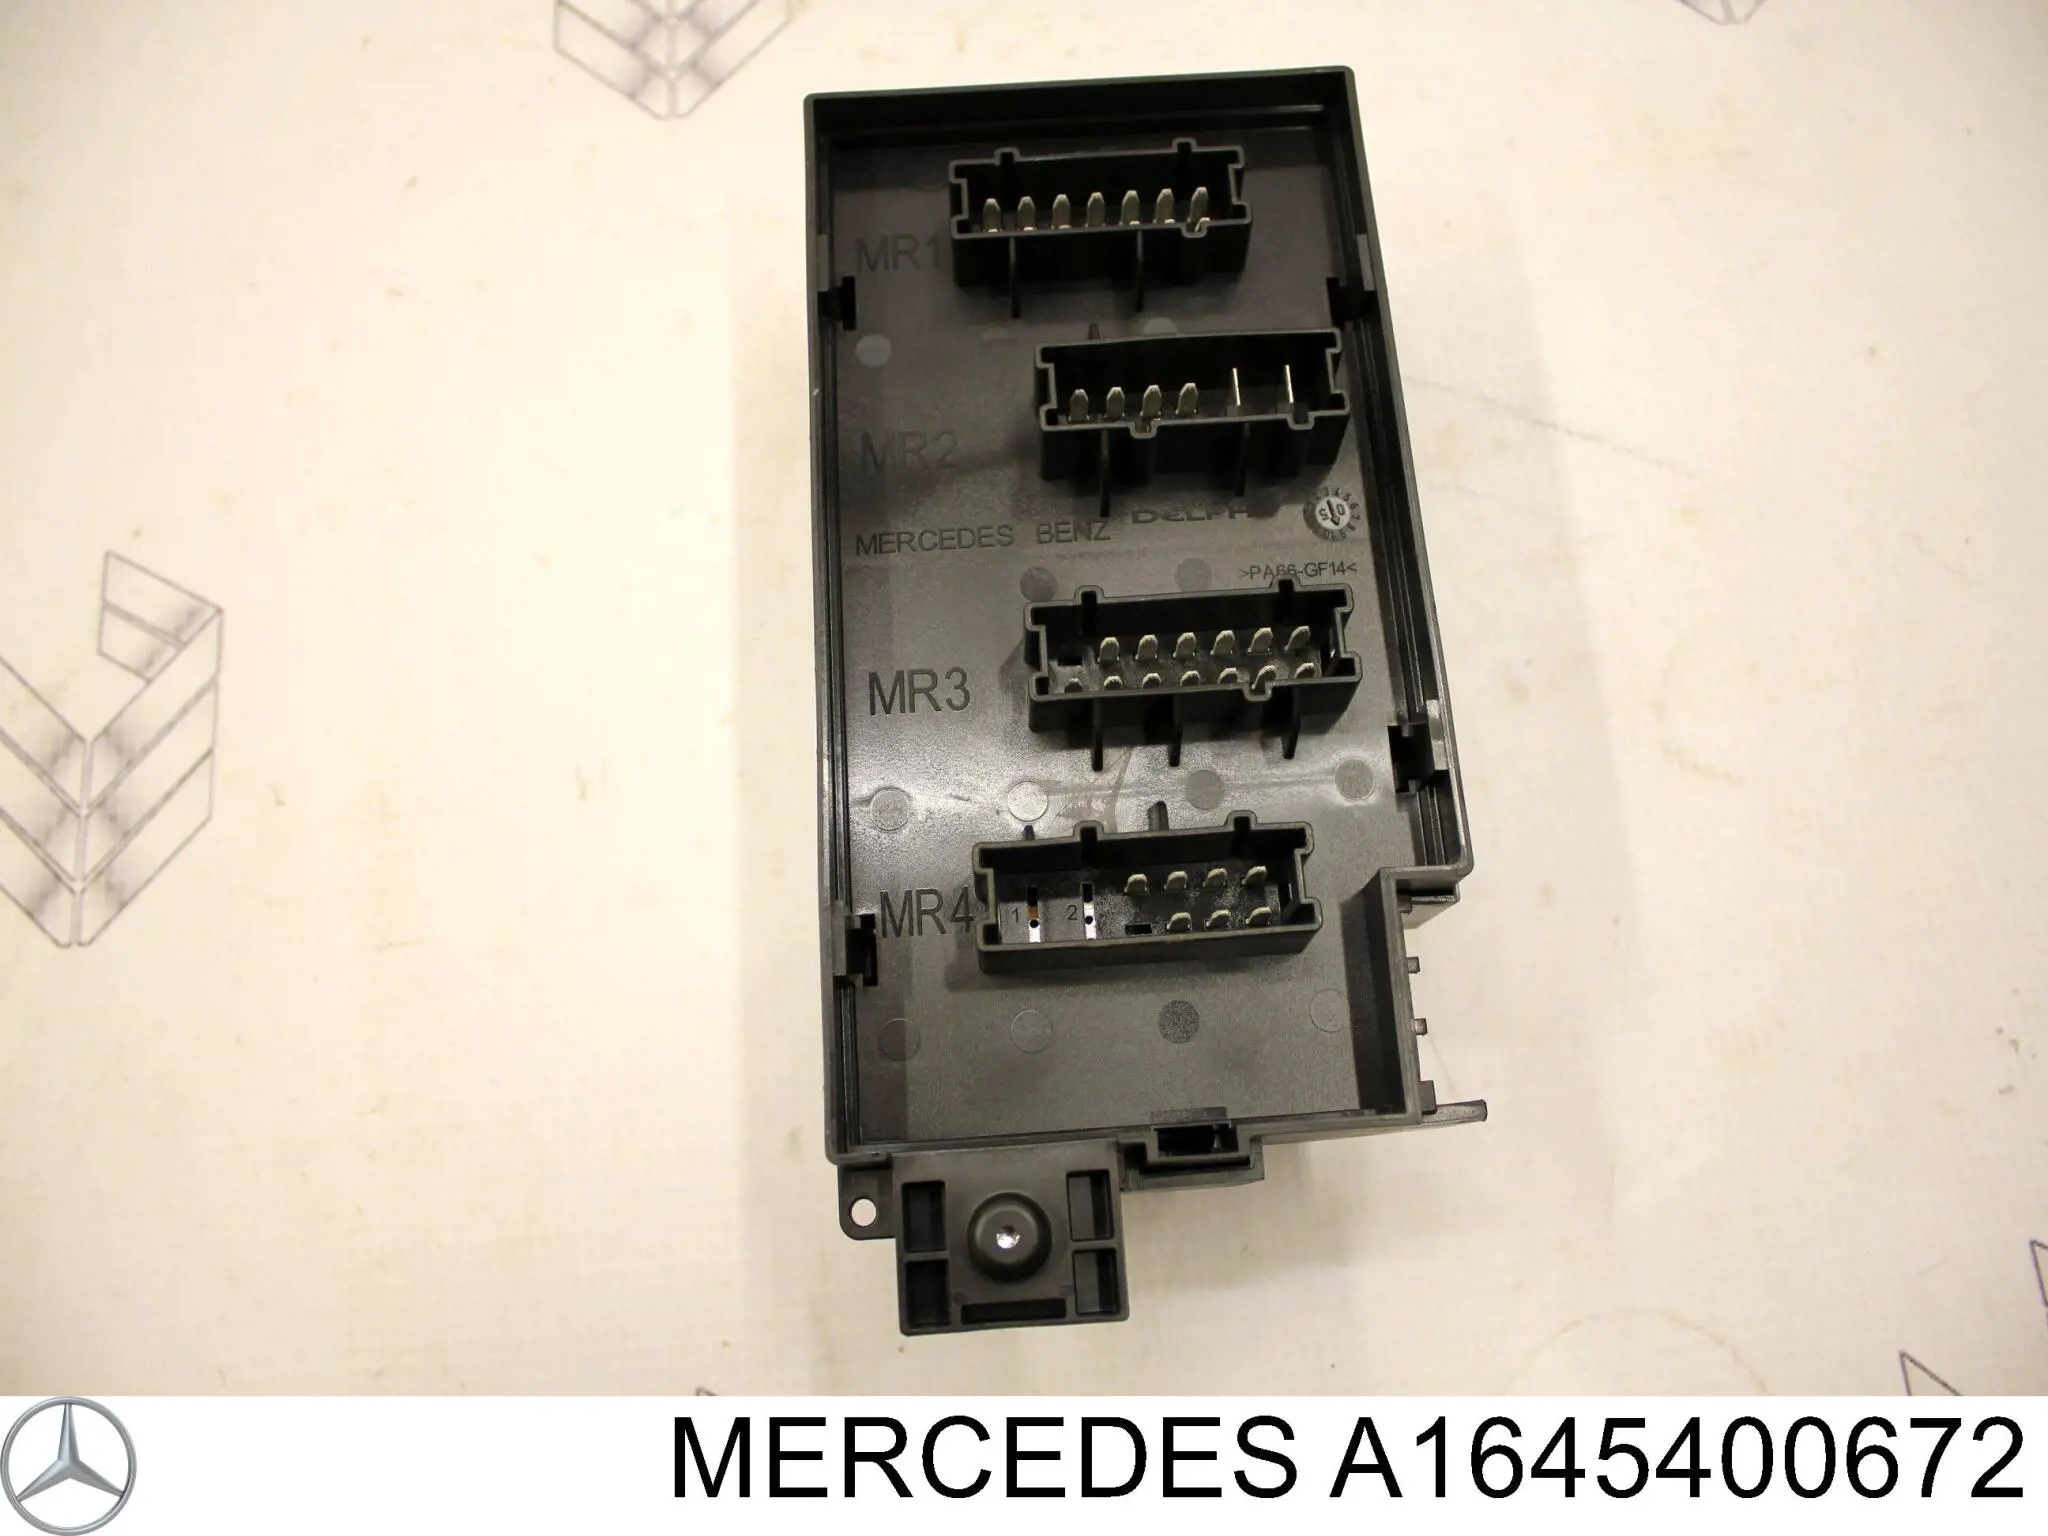 A1645400672 Mercedes caja de fusibles